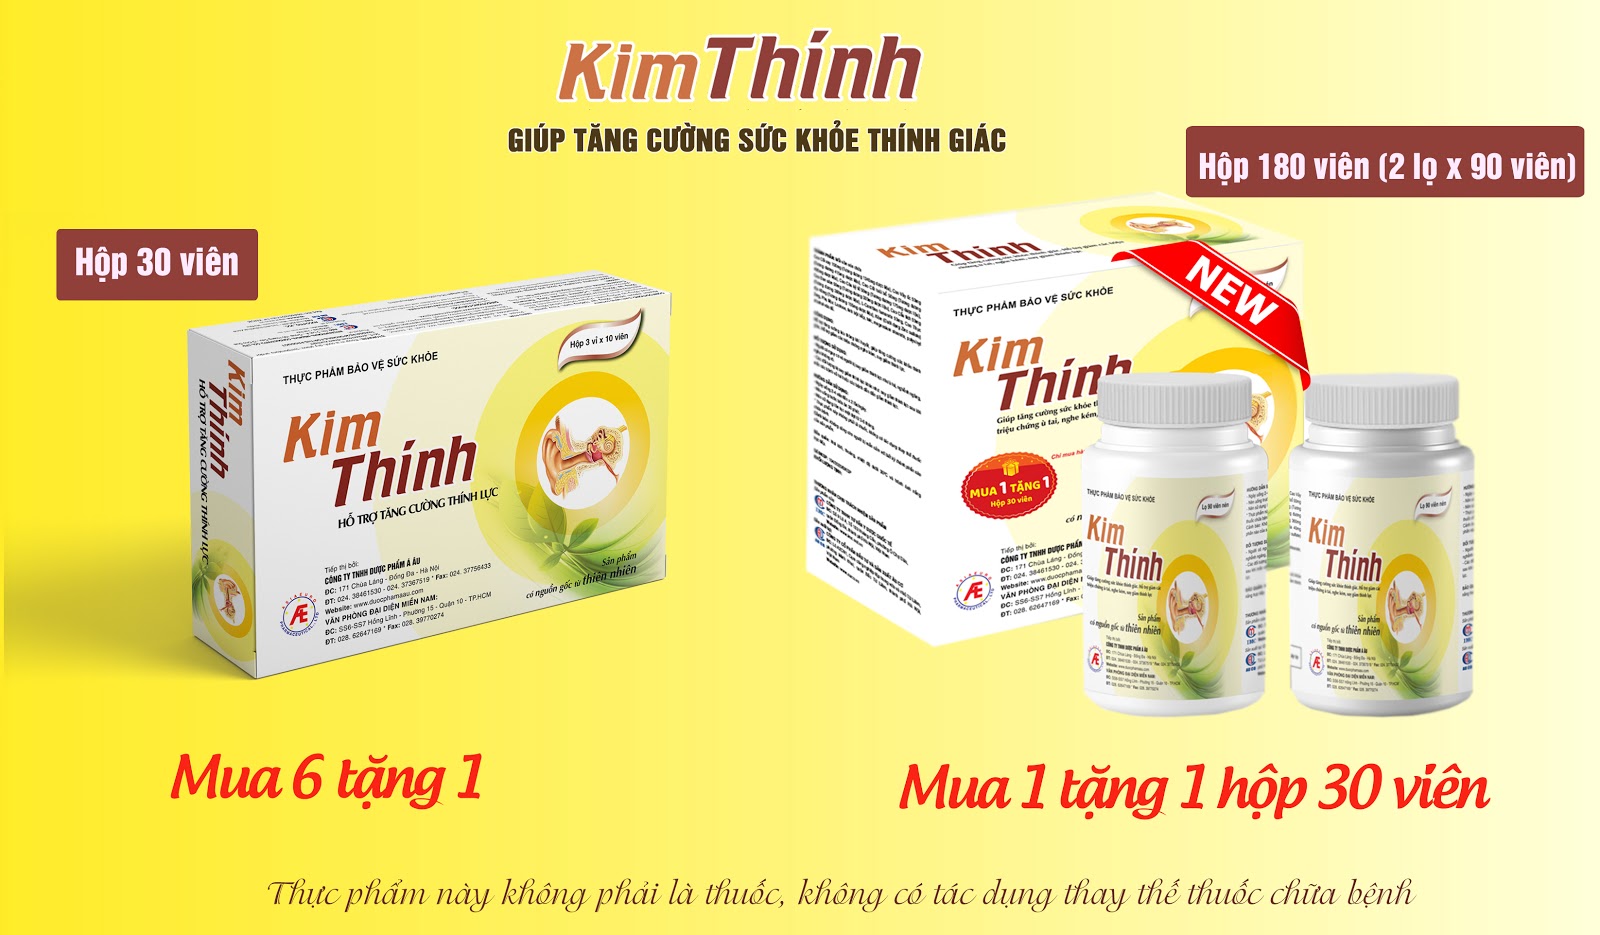 Thực phẩm bảo vệ sức khỏe Kim Thính